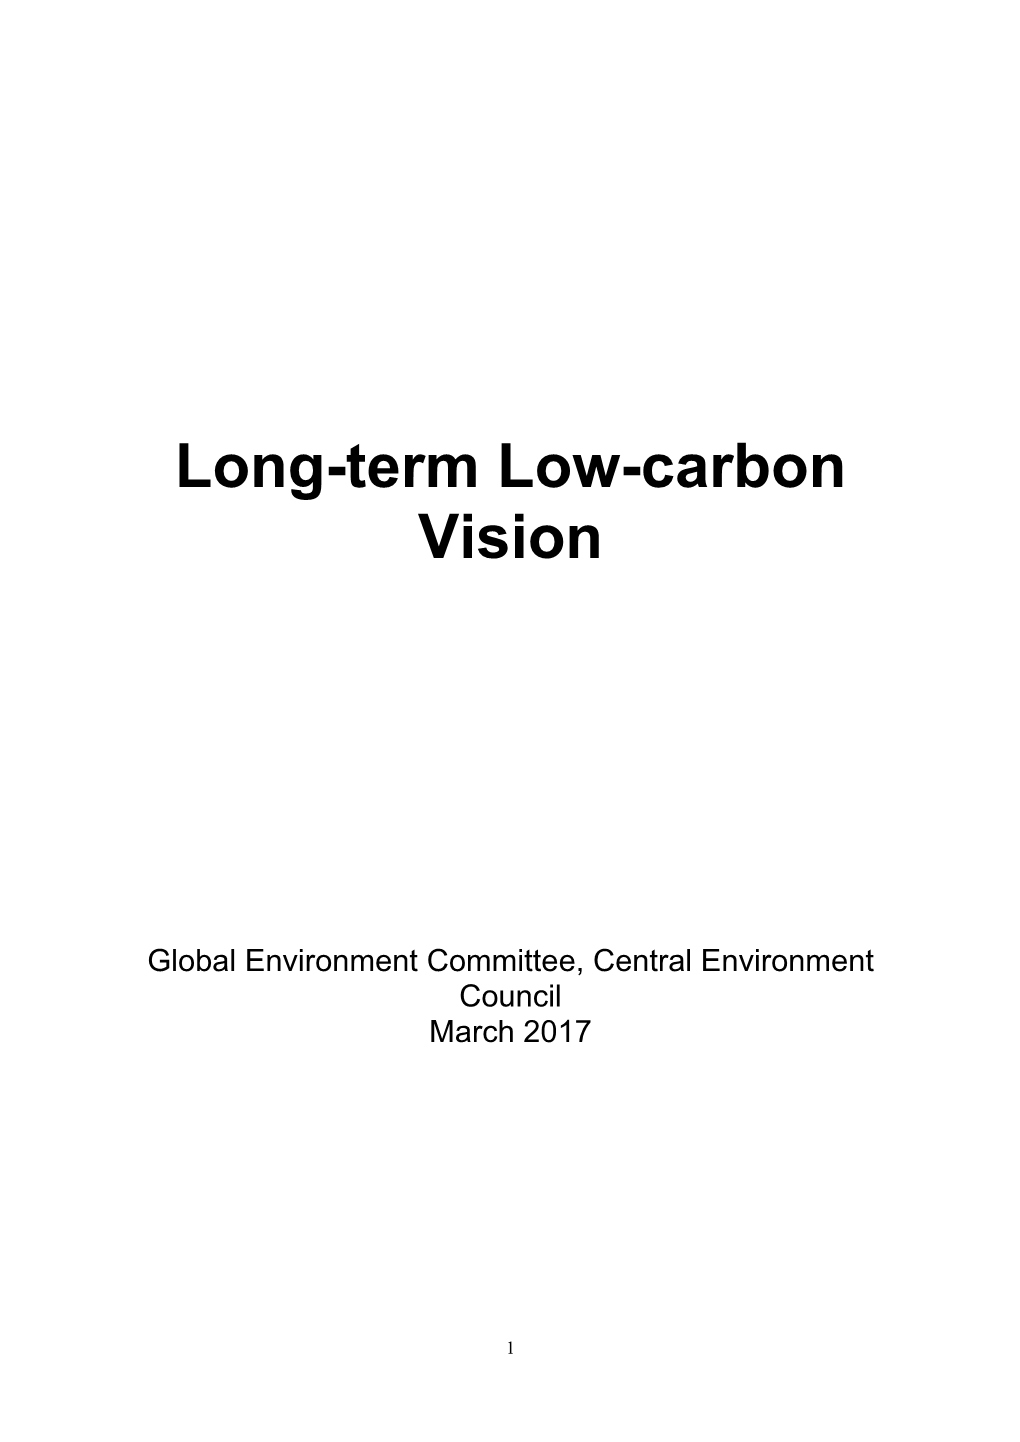 Long-Term Low-Carbon Vision